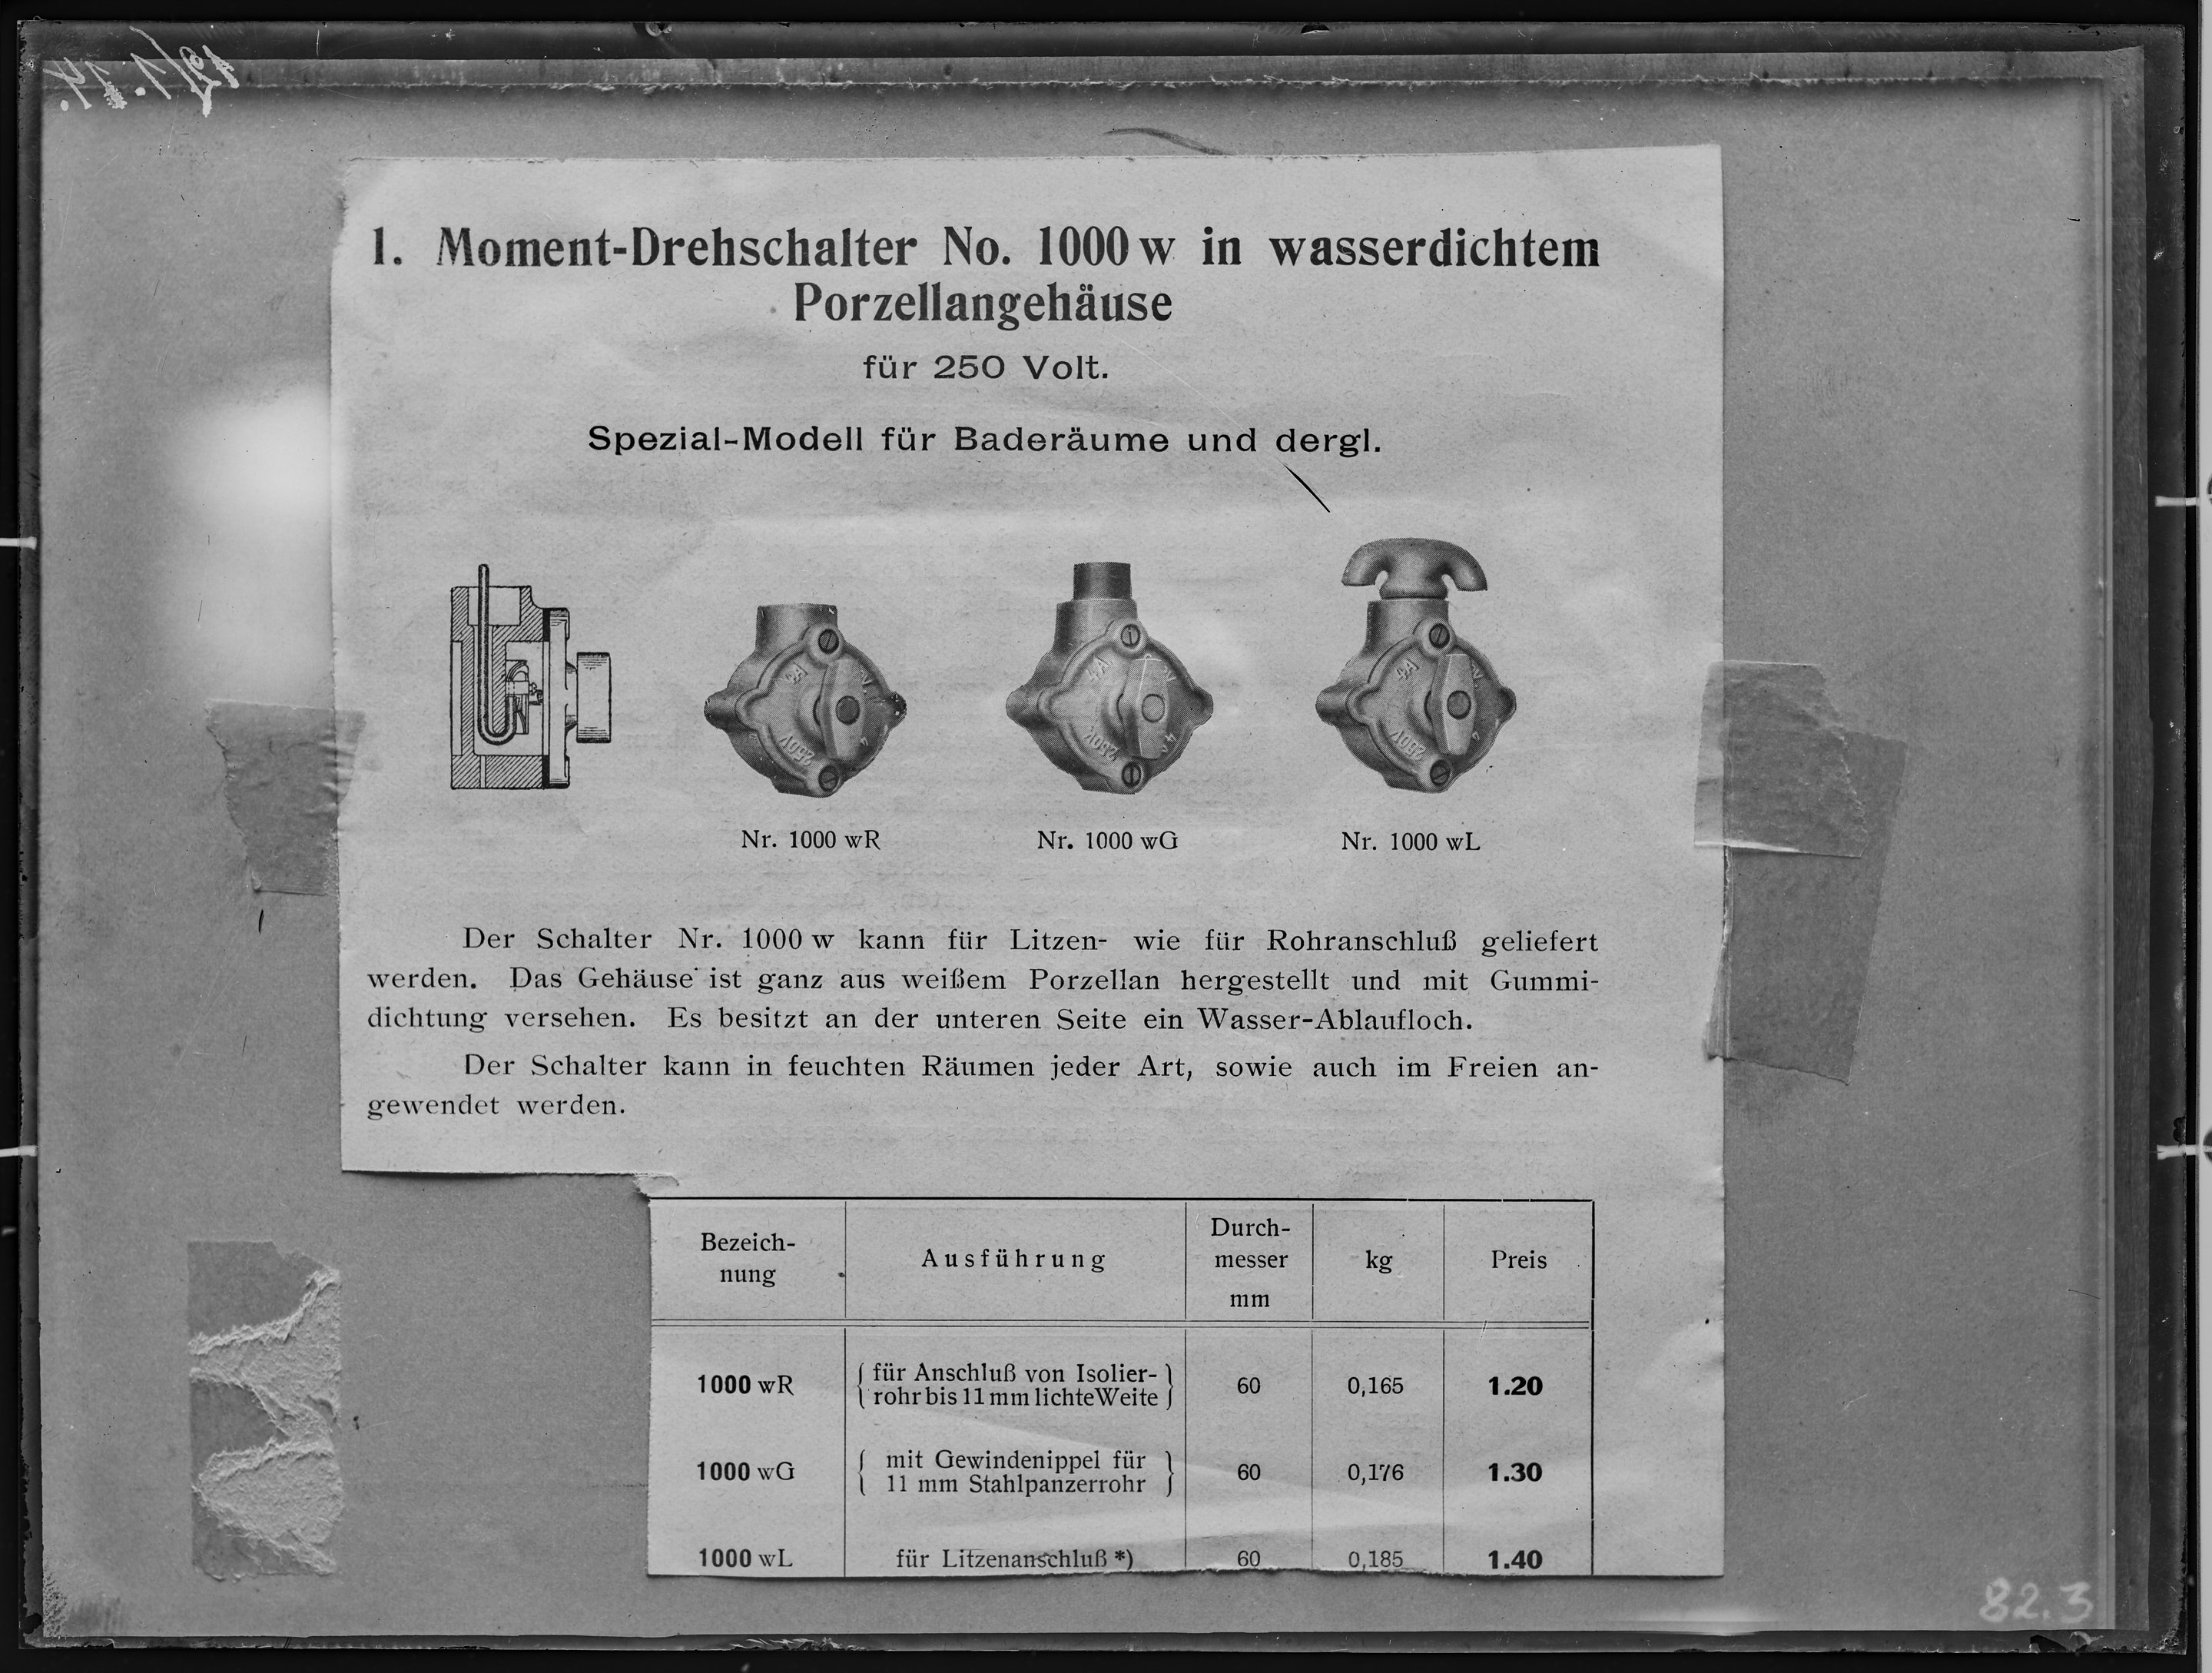 Fotografie: Reproduktion von Ausschnitt vermutlich aus Produkt-Infoblatt für Moment-Drehschalter Nr. 1000w in wasserdichtem Porzellangehäuse für 250 V (Verkehrsmuseum Dresden CC BY-NC-SA)